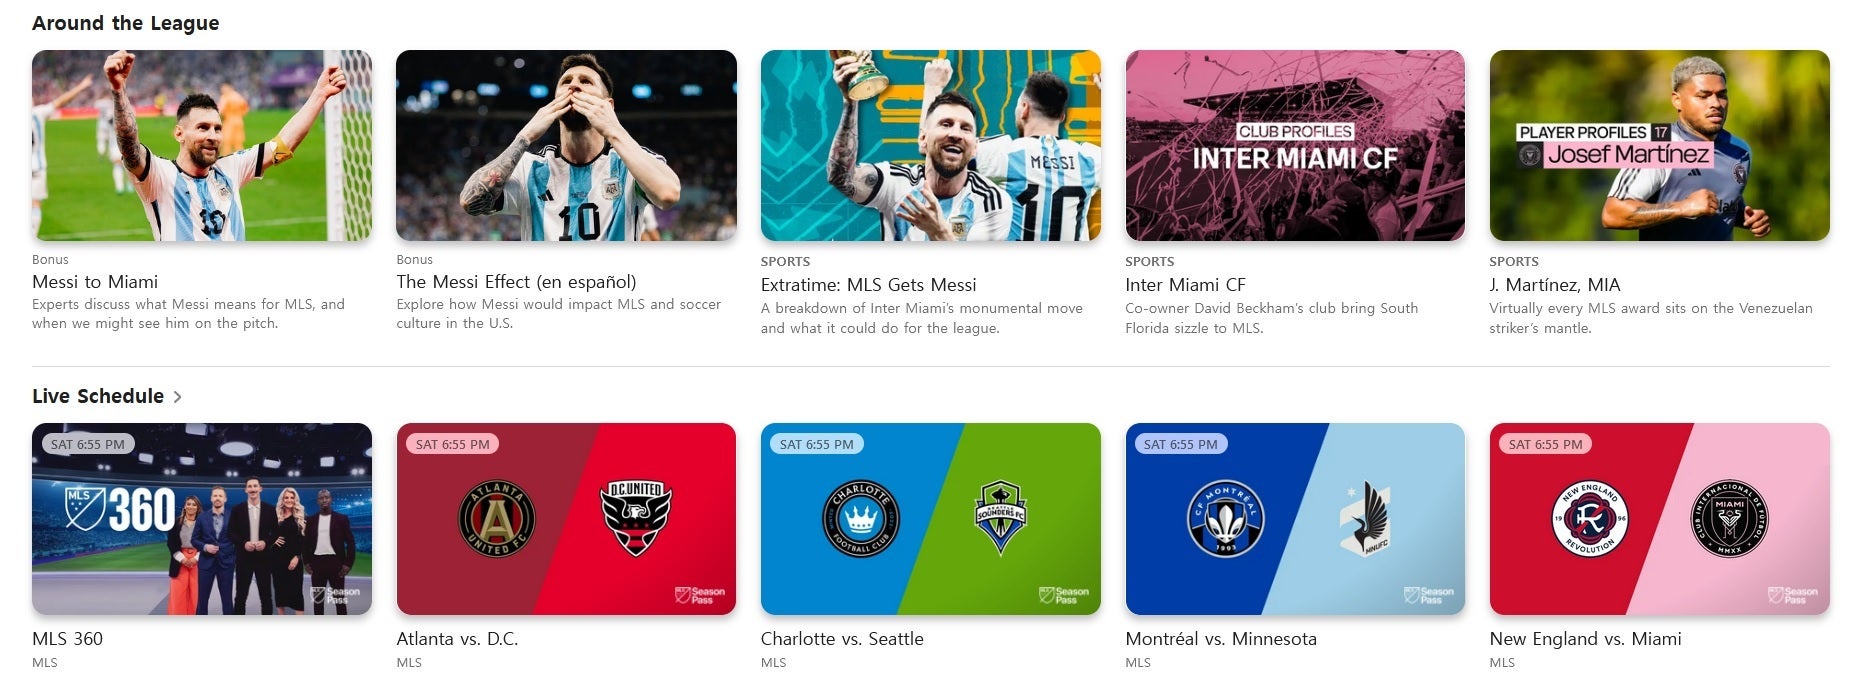 اپل Season Pass MLS را از طریق Apple TV+ ارائه می دهد - انتقال لیونل مسی فوق ستاره فوتبال به ایالات متحده یک پیروزی بزرگ برای اپل است.  اینجا چرا